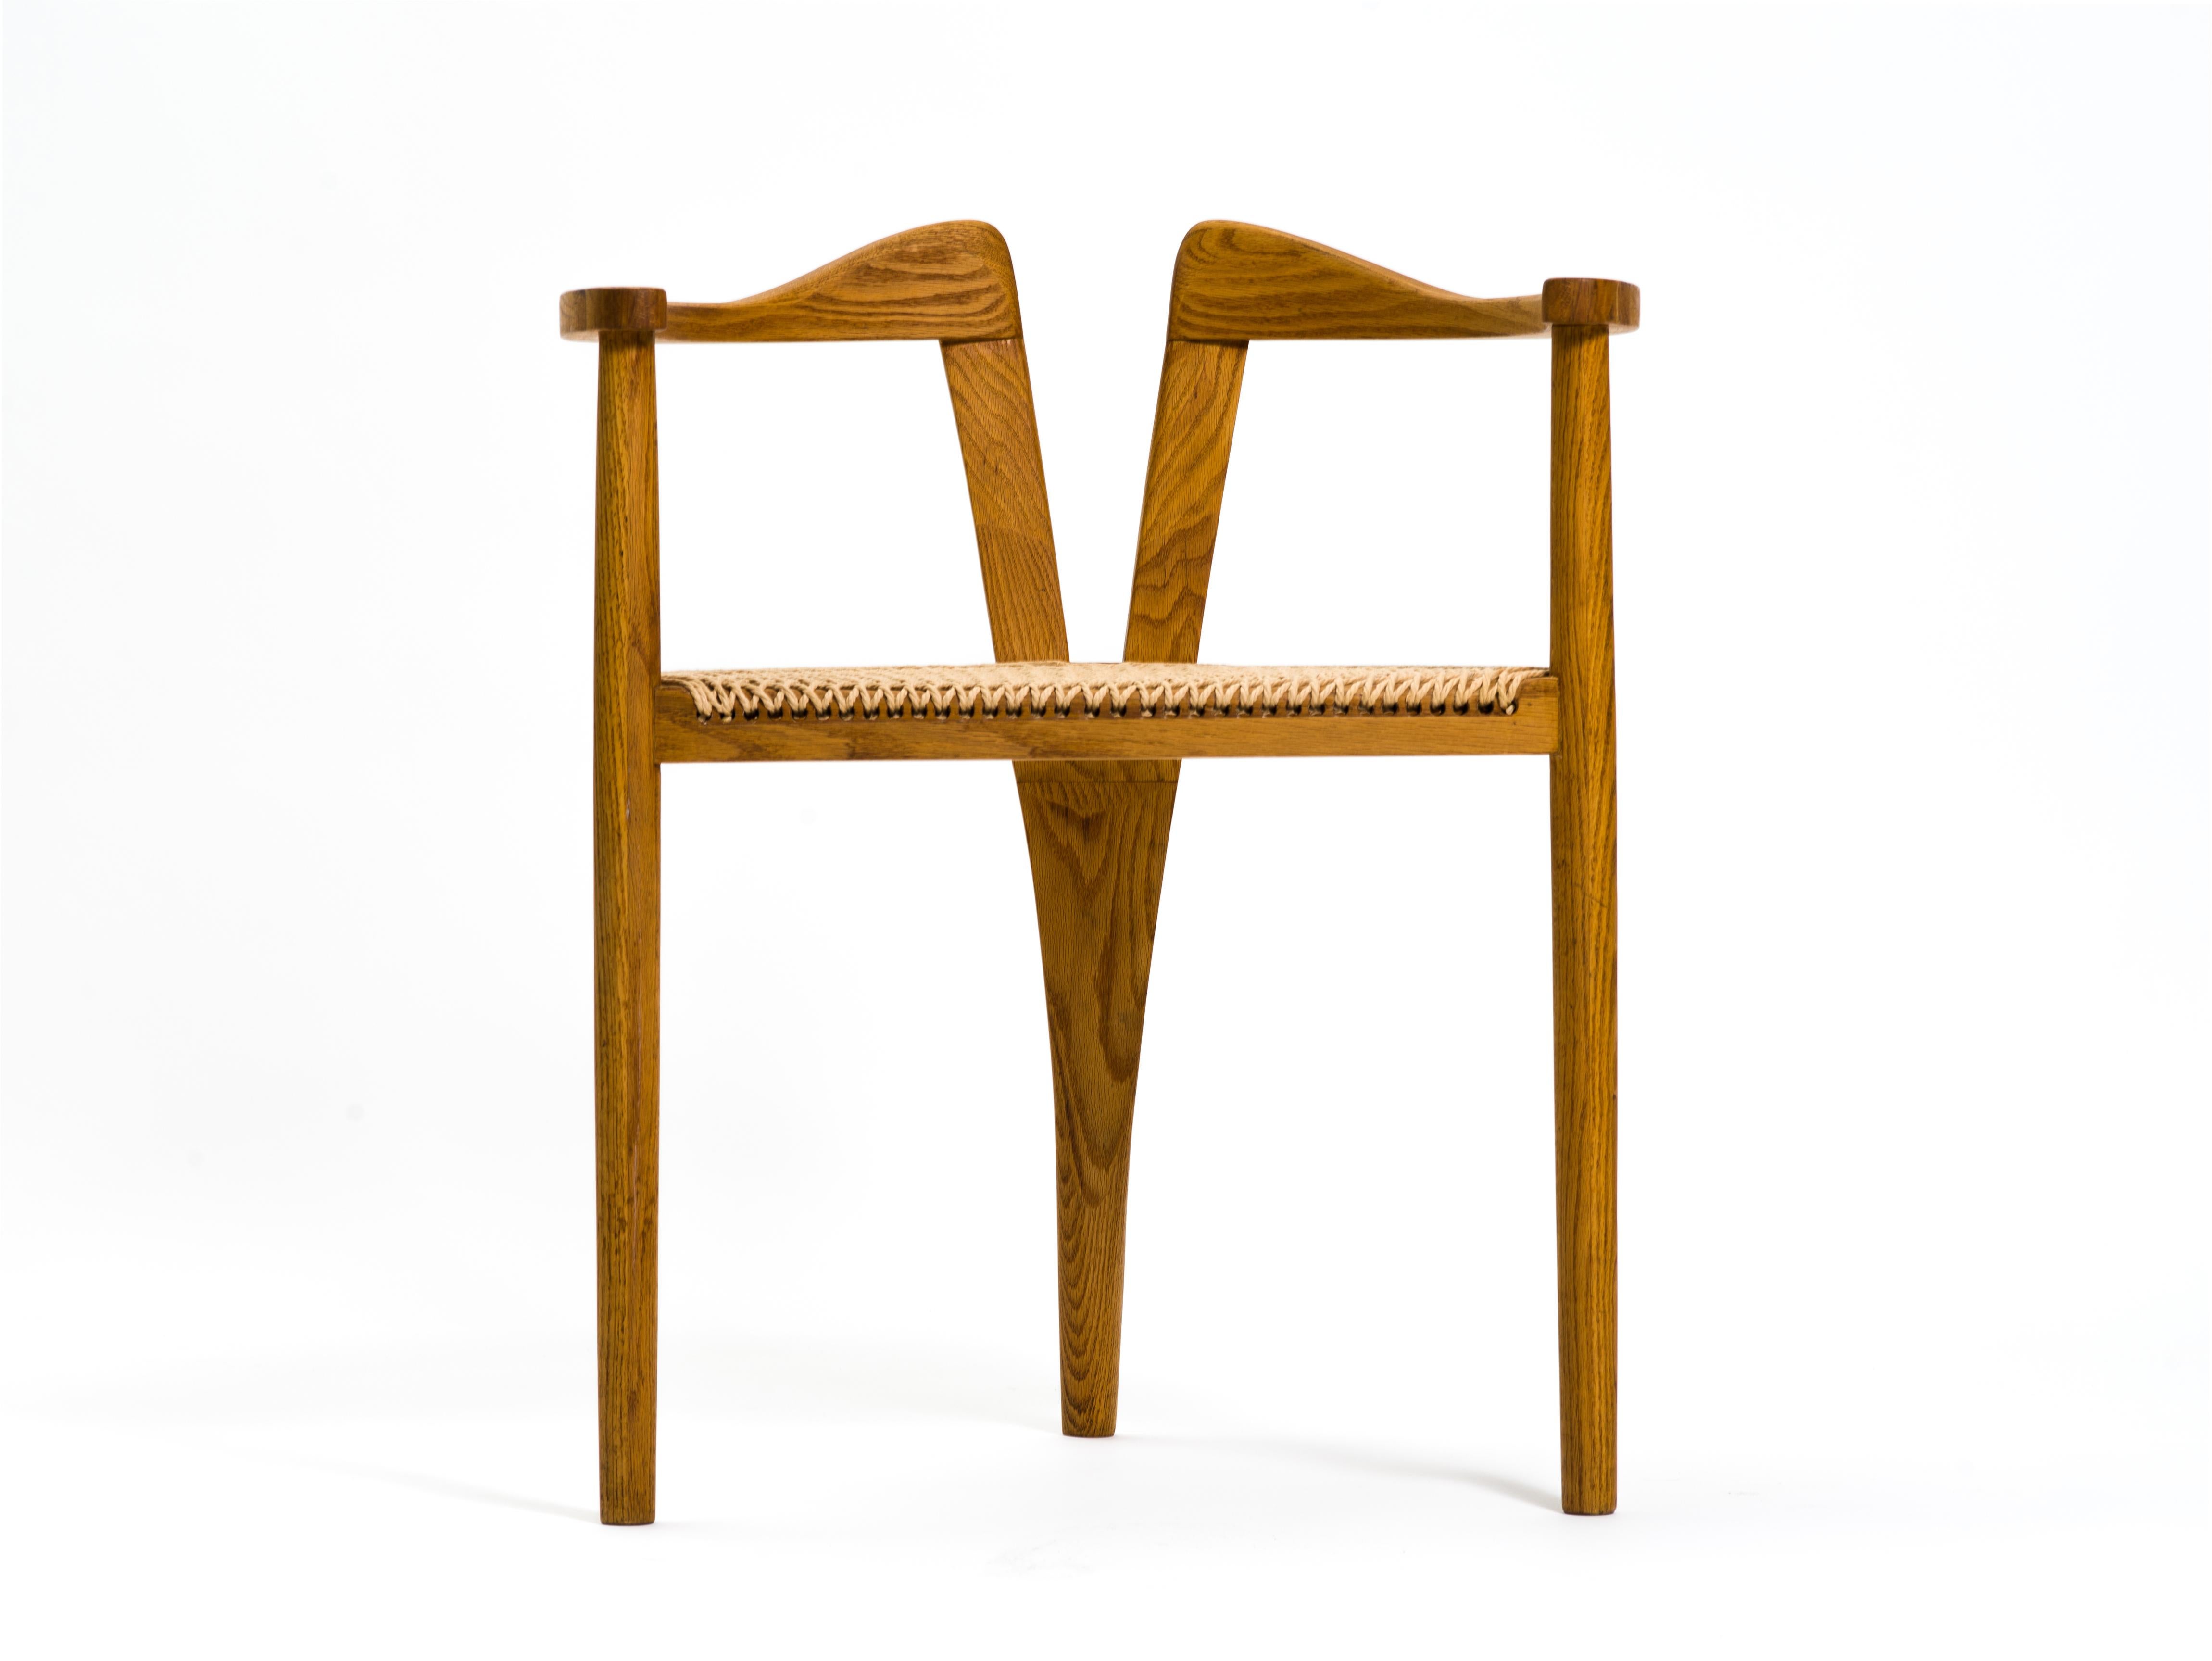 Une remarquable chaise d'atelier à trois pieds, exécutée en chêne massif et finie avec un siège en corde de papier tissé à la main aux motifs magnifiques. Les accoudoirs ondulés sont soutenus par des pieds goujons de style danois, celui de l'arrière